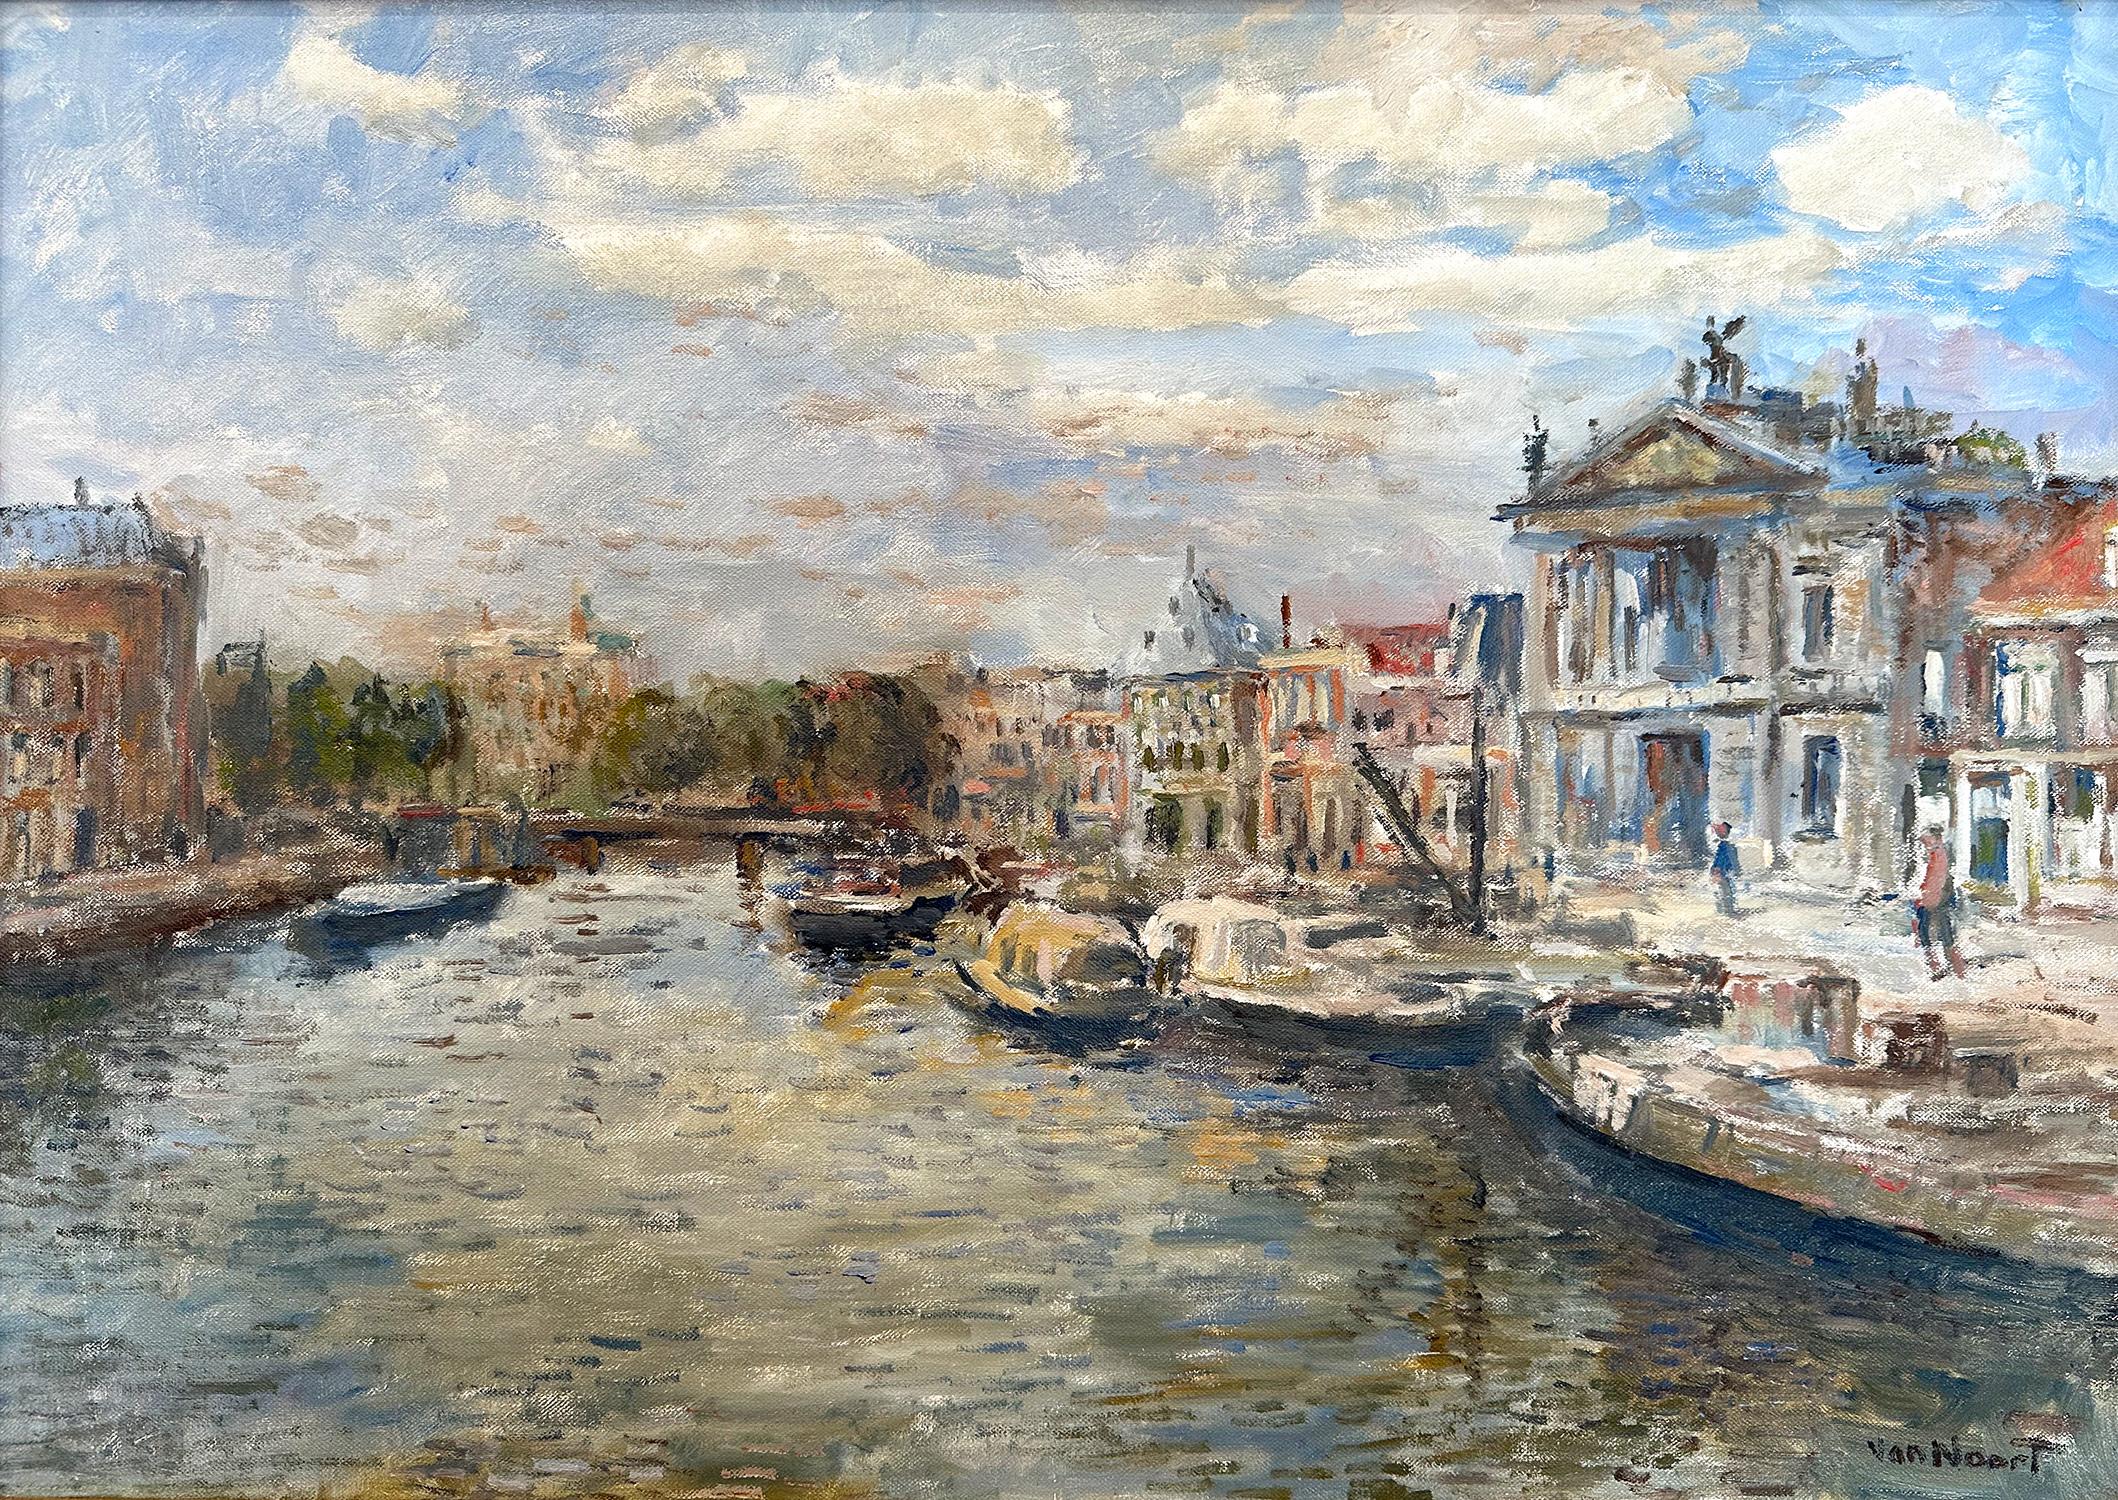 Impressionistisches Ölgemälde auf Leinwand „Spaarne te Haarlem“ von Spaarne te Haarlem, Niederländischer Kanal – Painting von Arie C. Van Noort